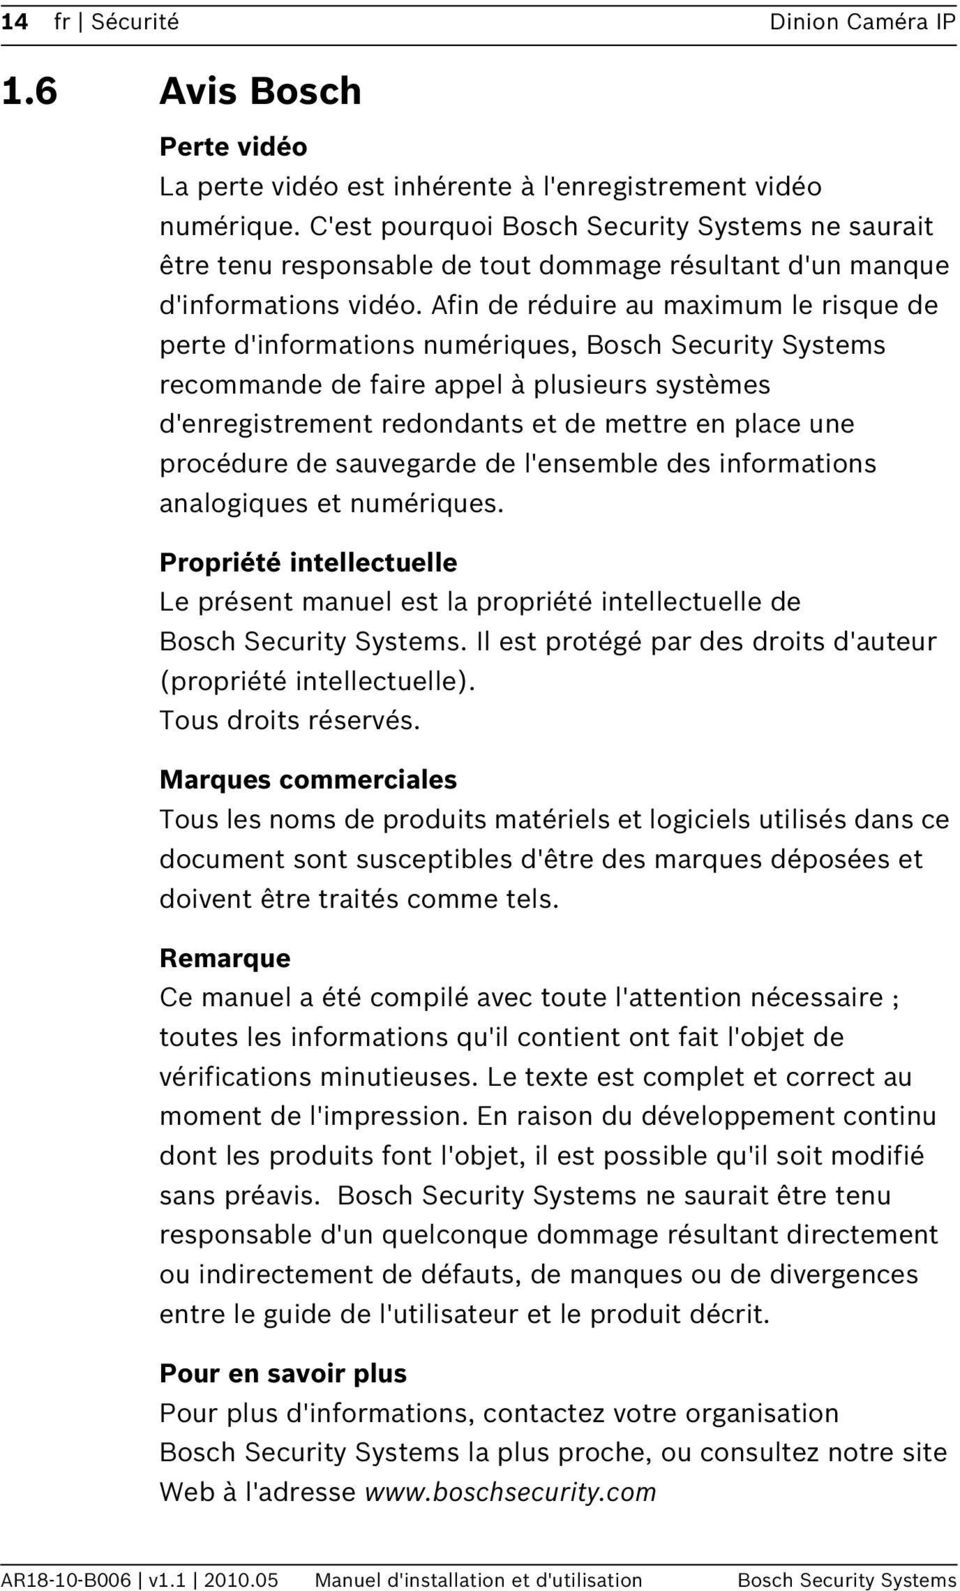 Afin de réduire au maximum le risque de perte d'informations numériques, Bosch Security Systems recommande de faire appel à plusieurs systèmes d'enregistrement redondants et de mettre en place une